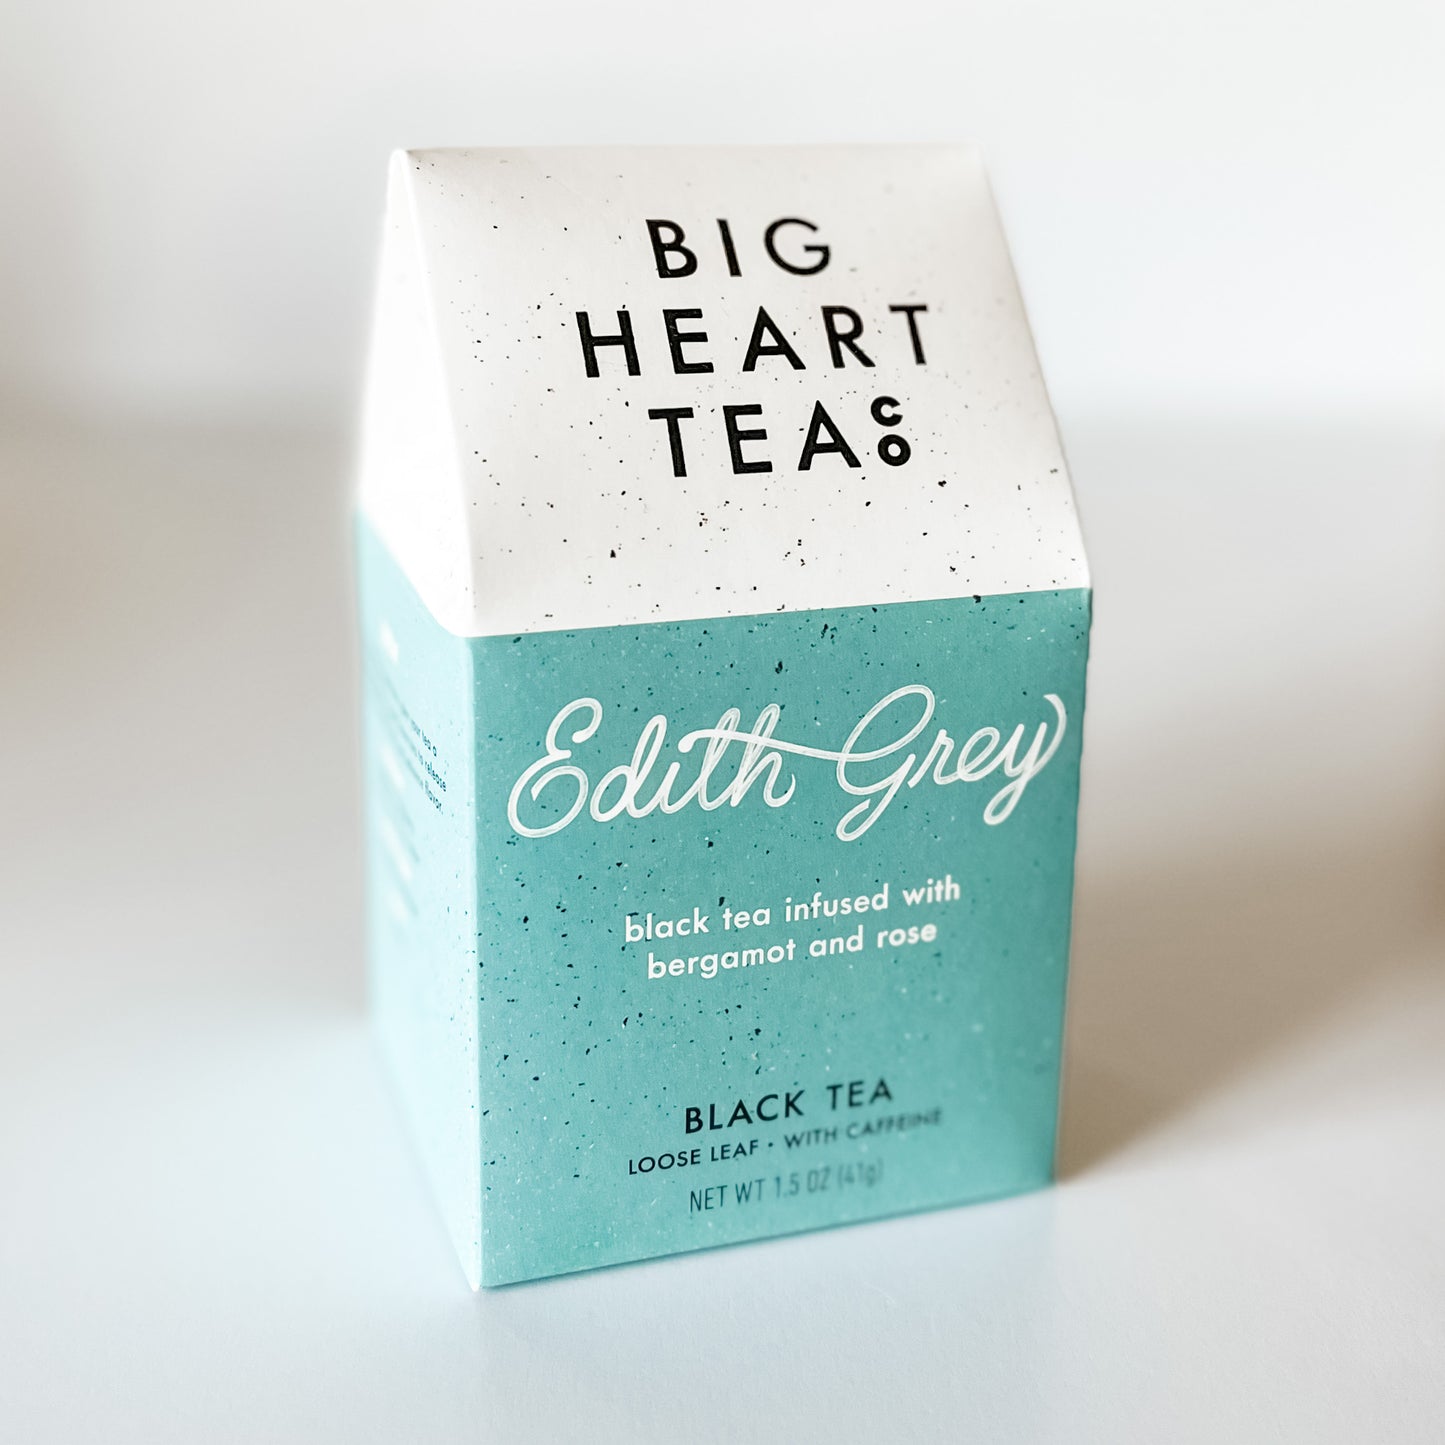 big heart tea co Edith grey black tea, loose leaf tea 